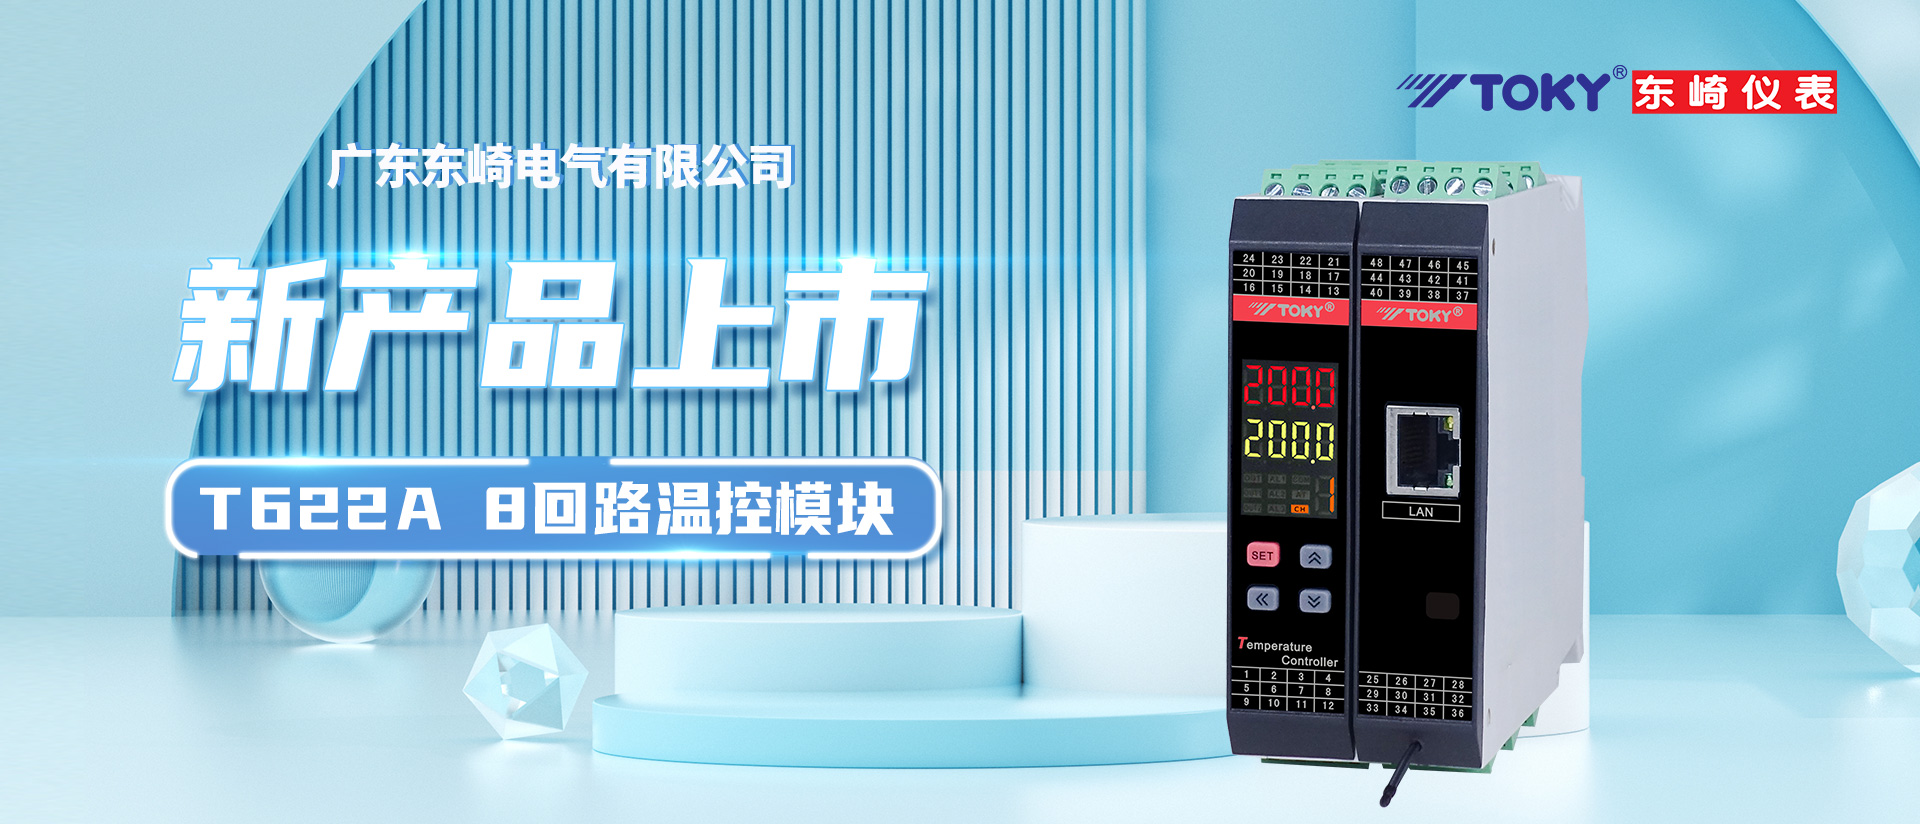 【新品上市】T622A系列8回路温控模块